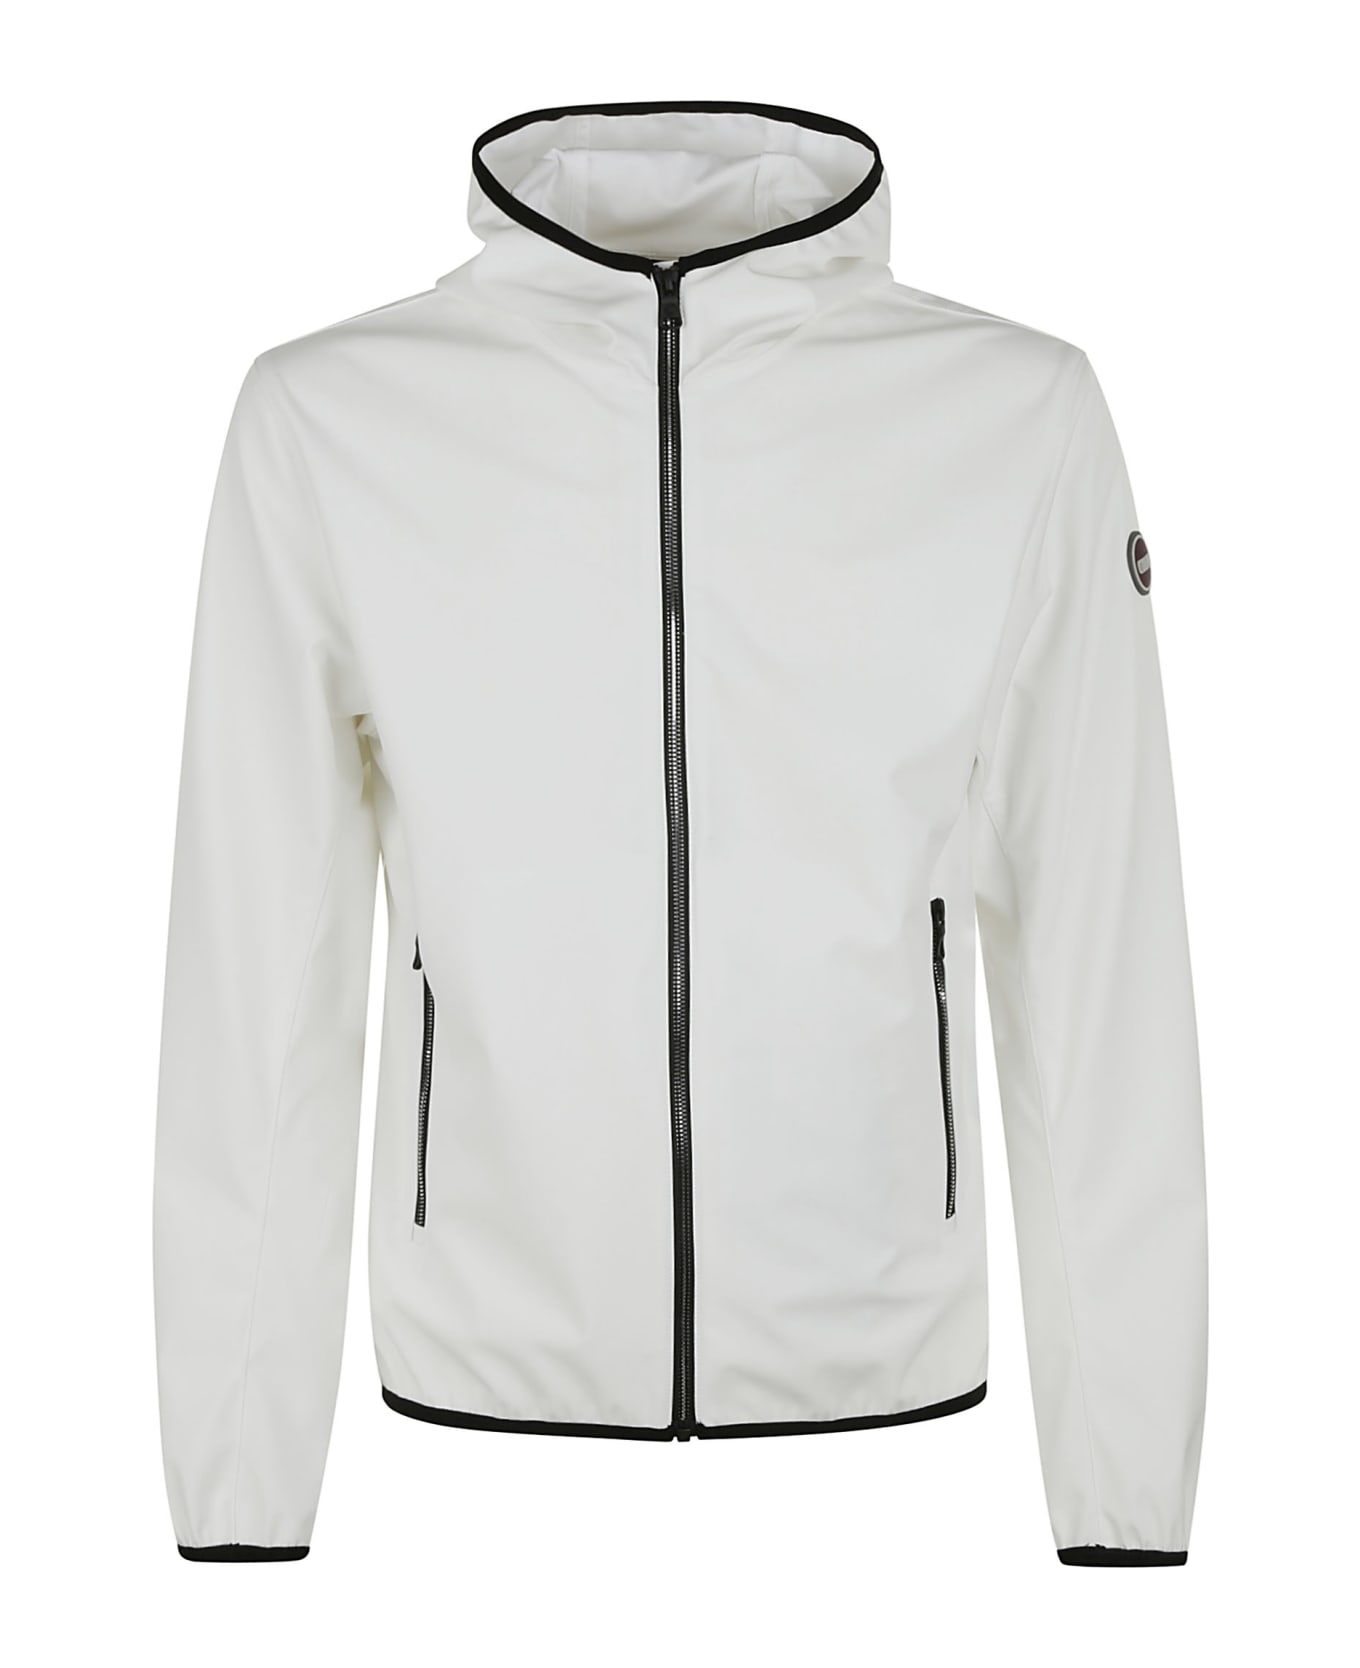 Colmar New Futurity Jacket - White